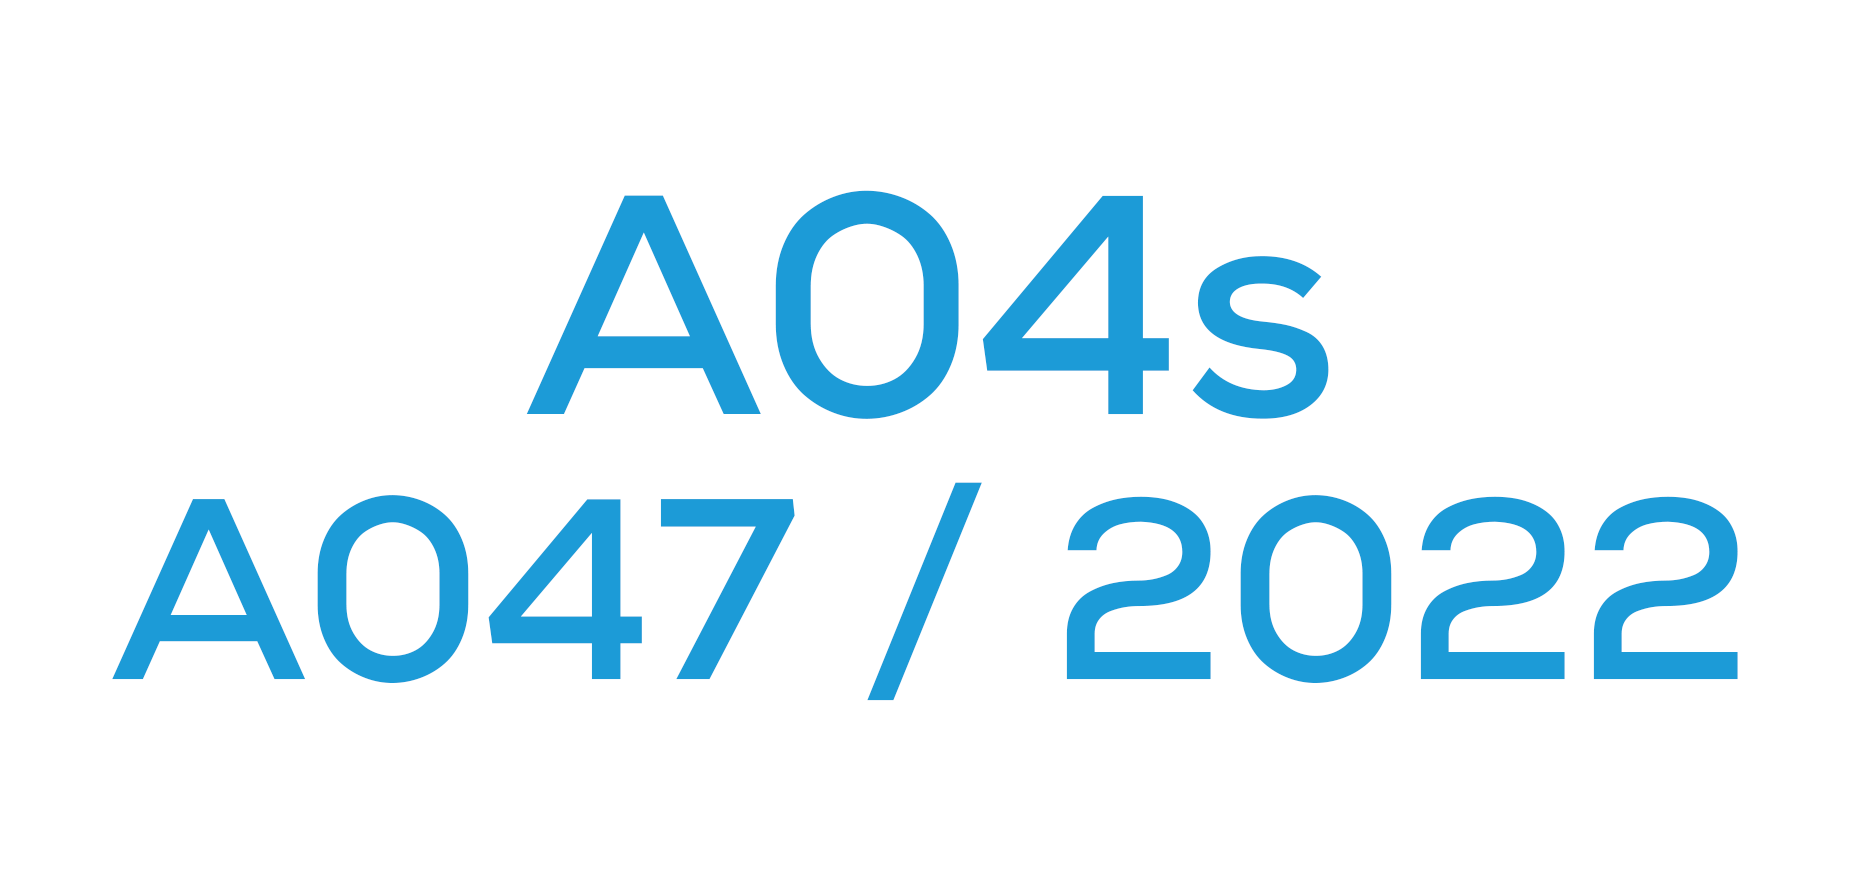 A04s (A047 / 2022)